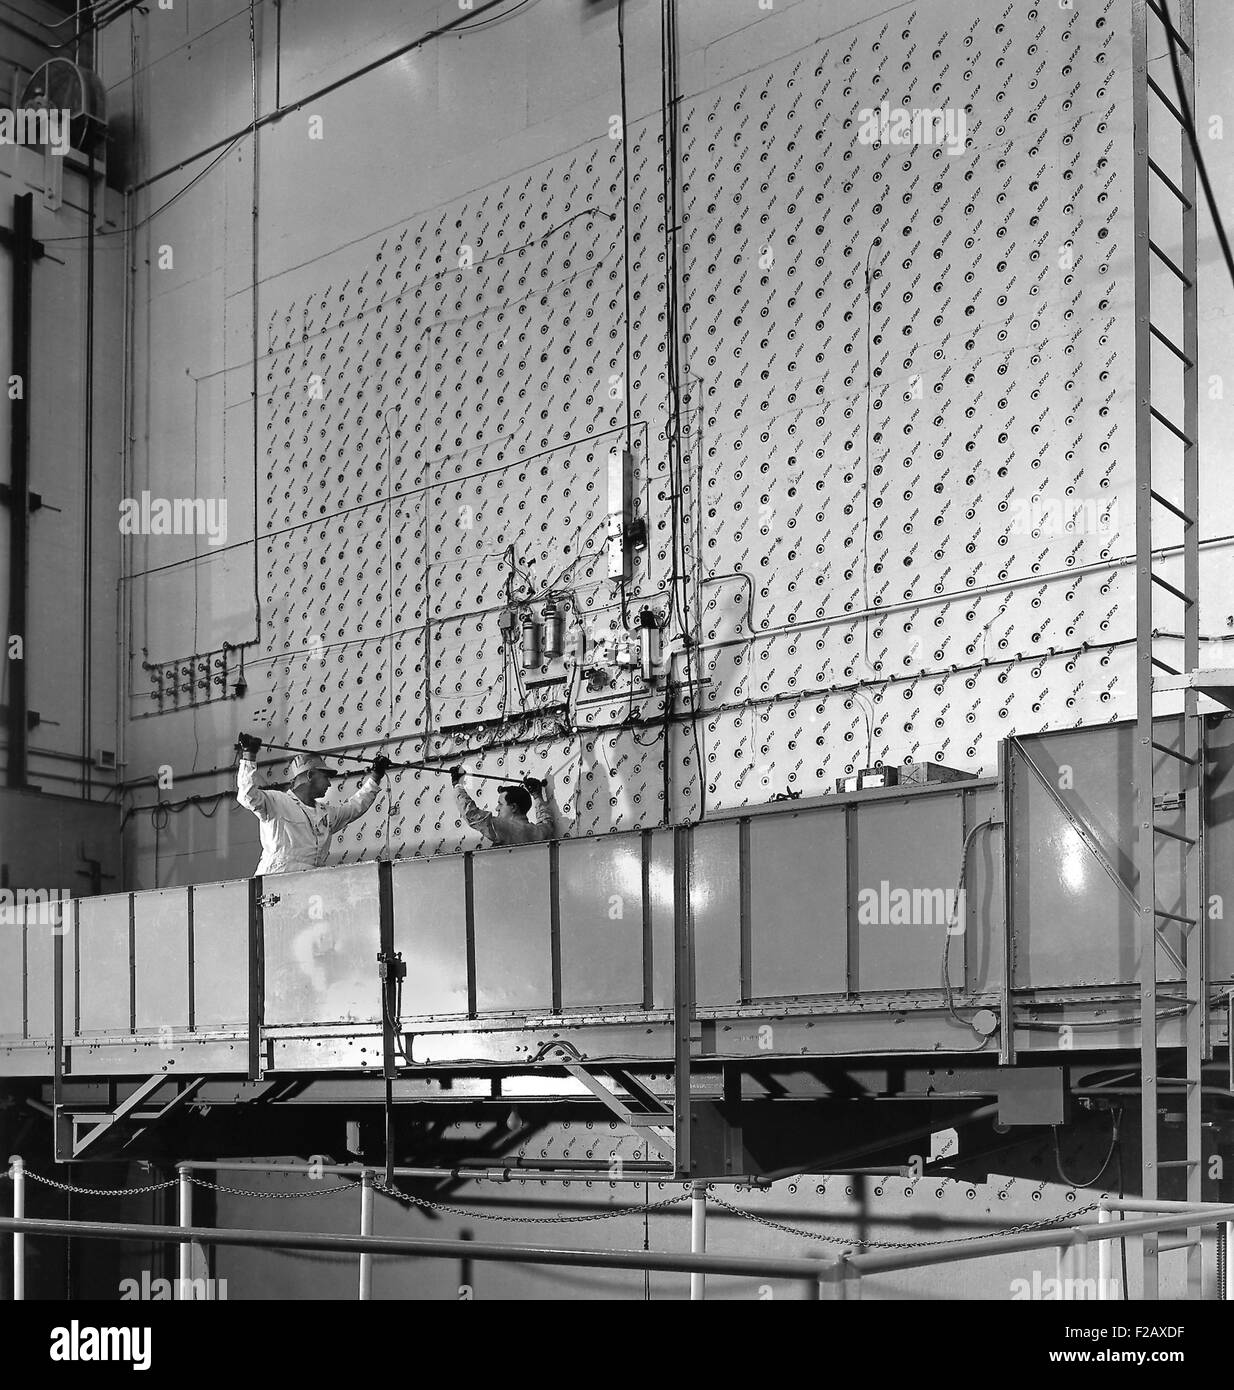 X-10 di grafite del reattore è stato il mondo artificiale secondo reattore nucleare. La foto mostra l'X-10's volto concreto a Oak Ridge National Laboratory. Dopo WW2, il reattore di grafite è diventato il primo al mondo a fornire isotopi radioattivi per il tempo di pace l'uso. Si produce isotopi iodio-131, fosforo-32, e carbonio-14, scientifiche, mediche, industriali e per usi agricoli. Reattore di grafite a X-10 è stato arrestato nel 1963, dopo venti anni di utilizzo. (BSLOC 2015 2 24) Foto Stock